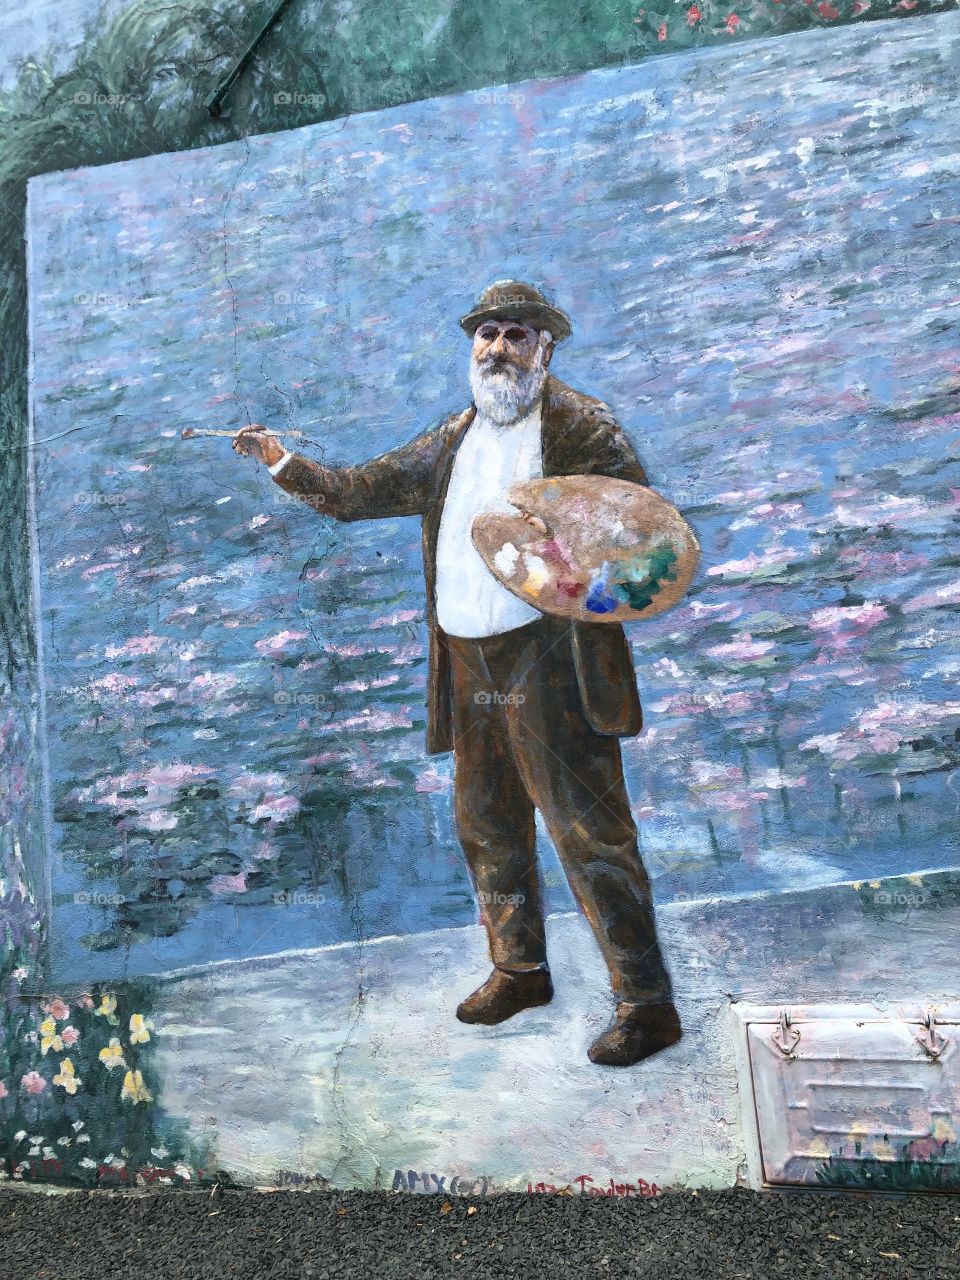 Mural of Monet